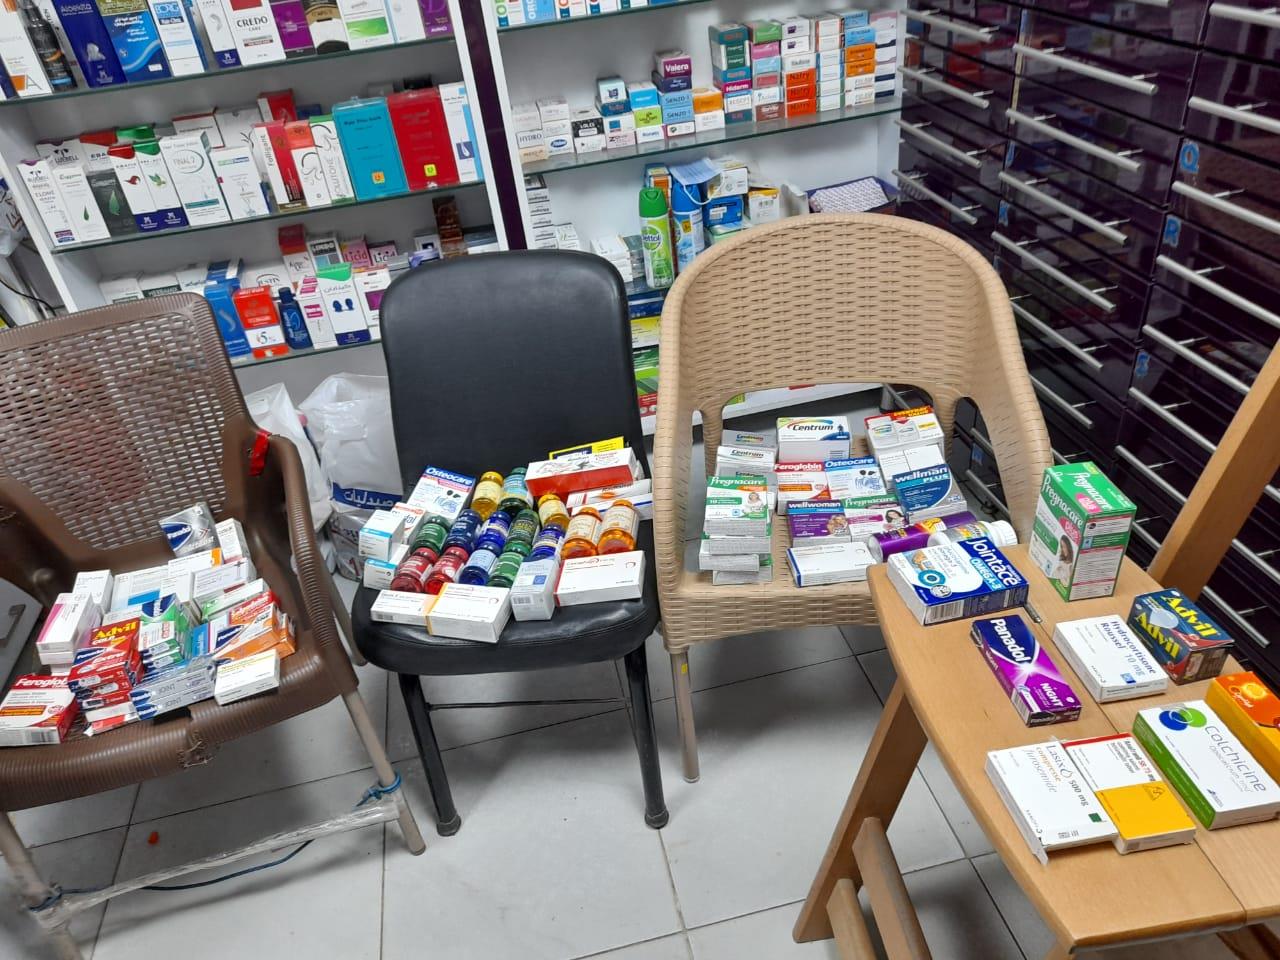 ضبط أدوية مهربة في حملة على 122 مستشفى خاص و367 صيدلية